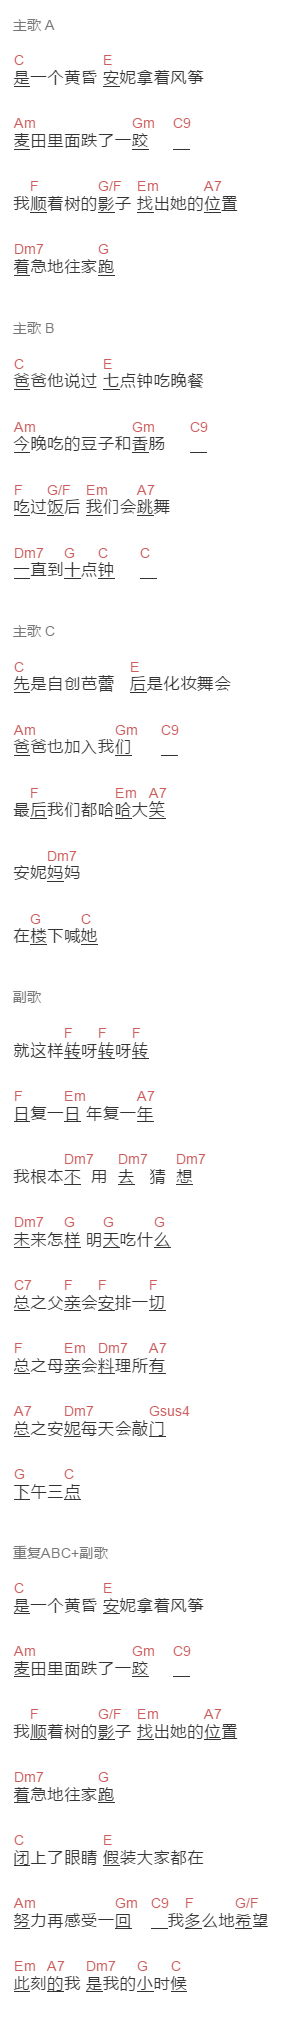 上海彩虹室内合唱团《流浪的小行星圆舞曲》吉他谱C调和弦谱(txt)1